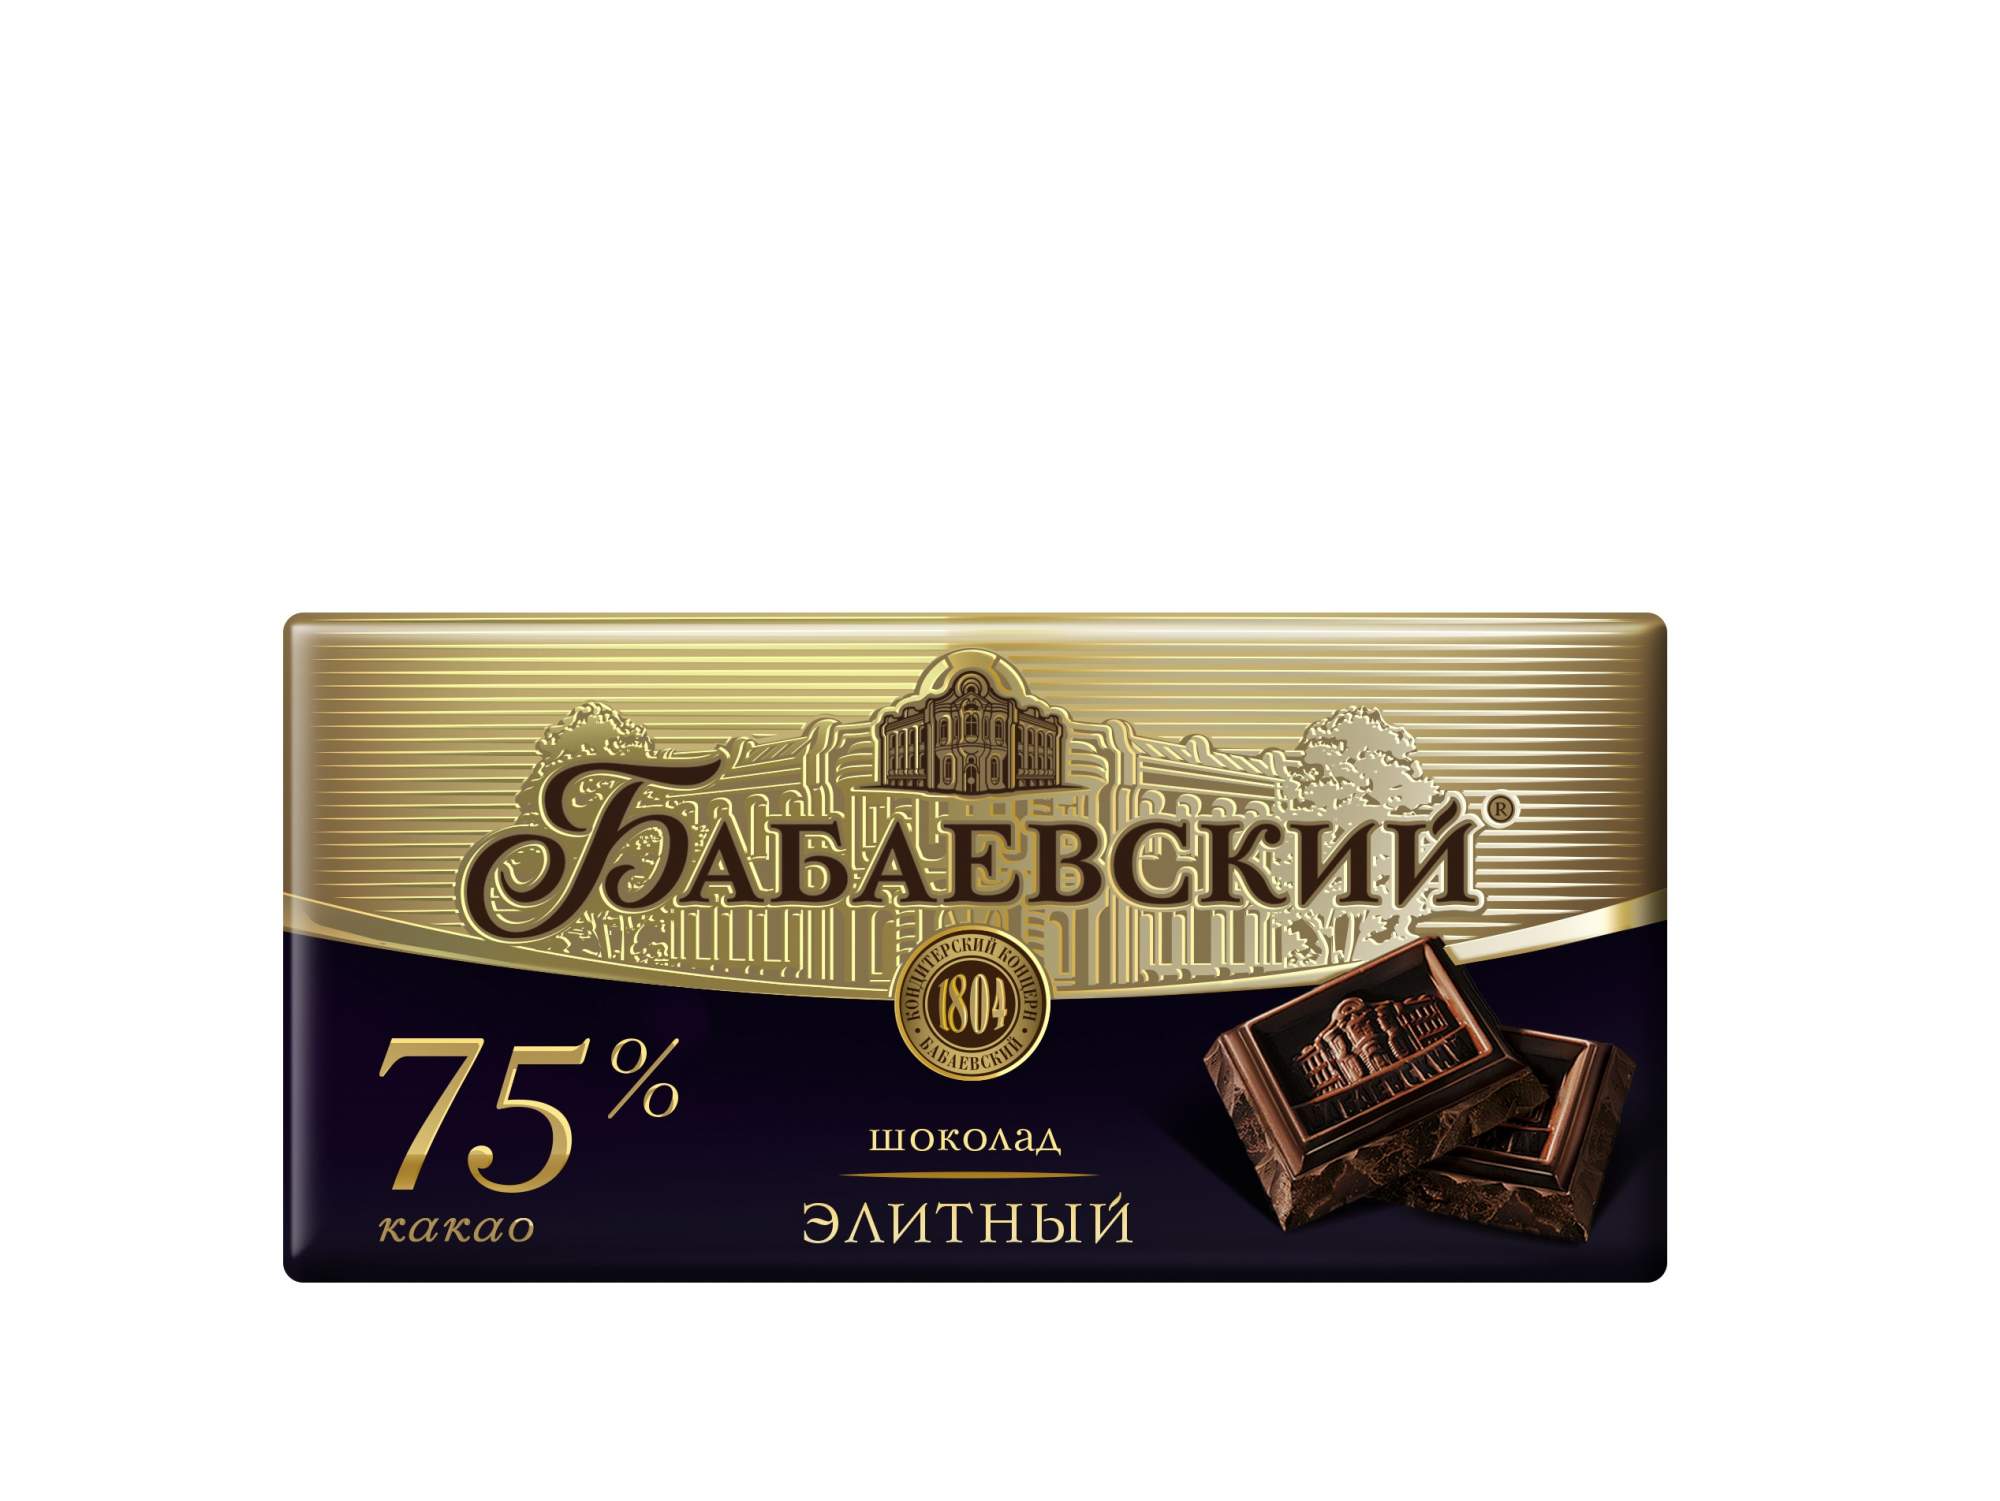 Лучший горький шоколад в россии. Бабаевский шоколад элитный 75 какао 200 гр.